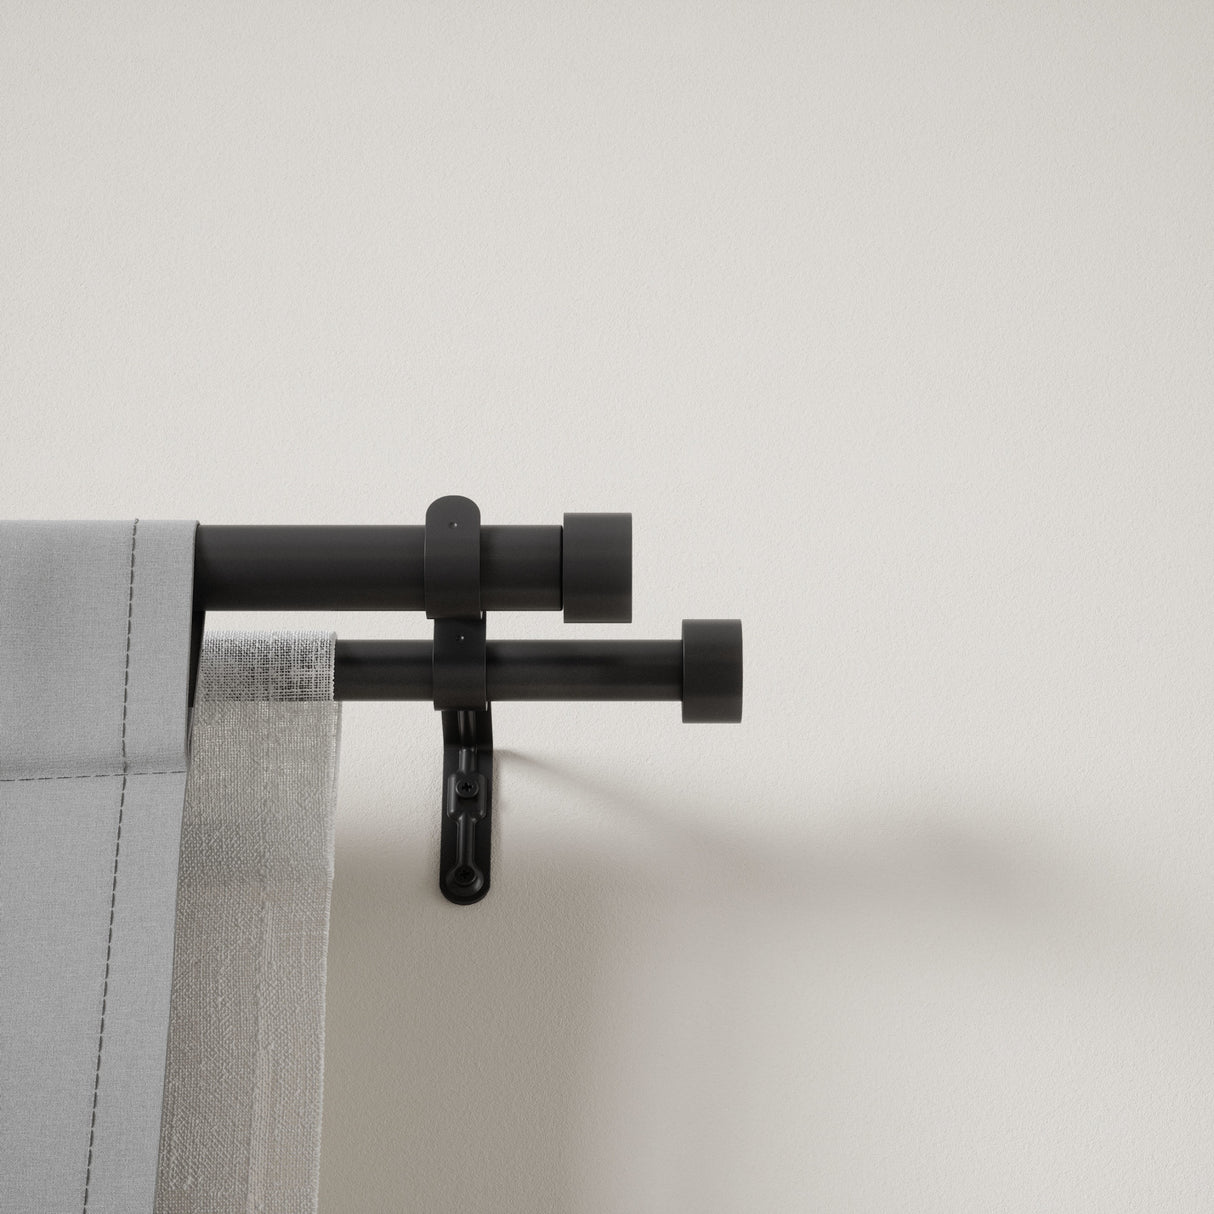 Double Curtain Rods | color: Brushed-Black | size: 120-180"(305-457cm) | diameter: 1"(2.5cm) | https://vimeo.com/625708718